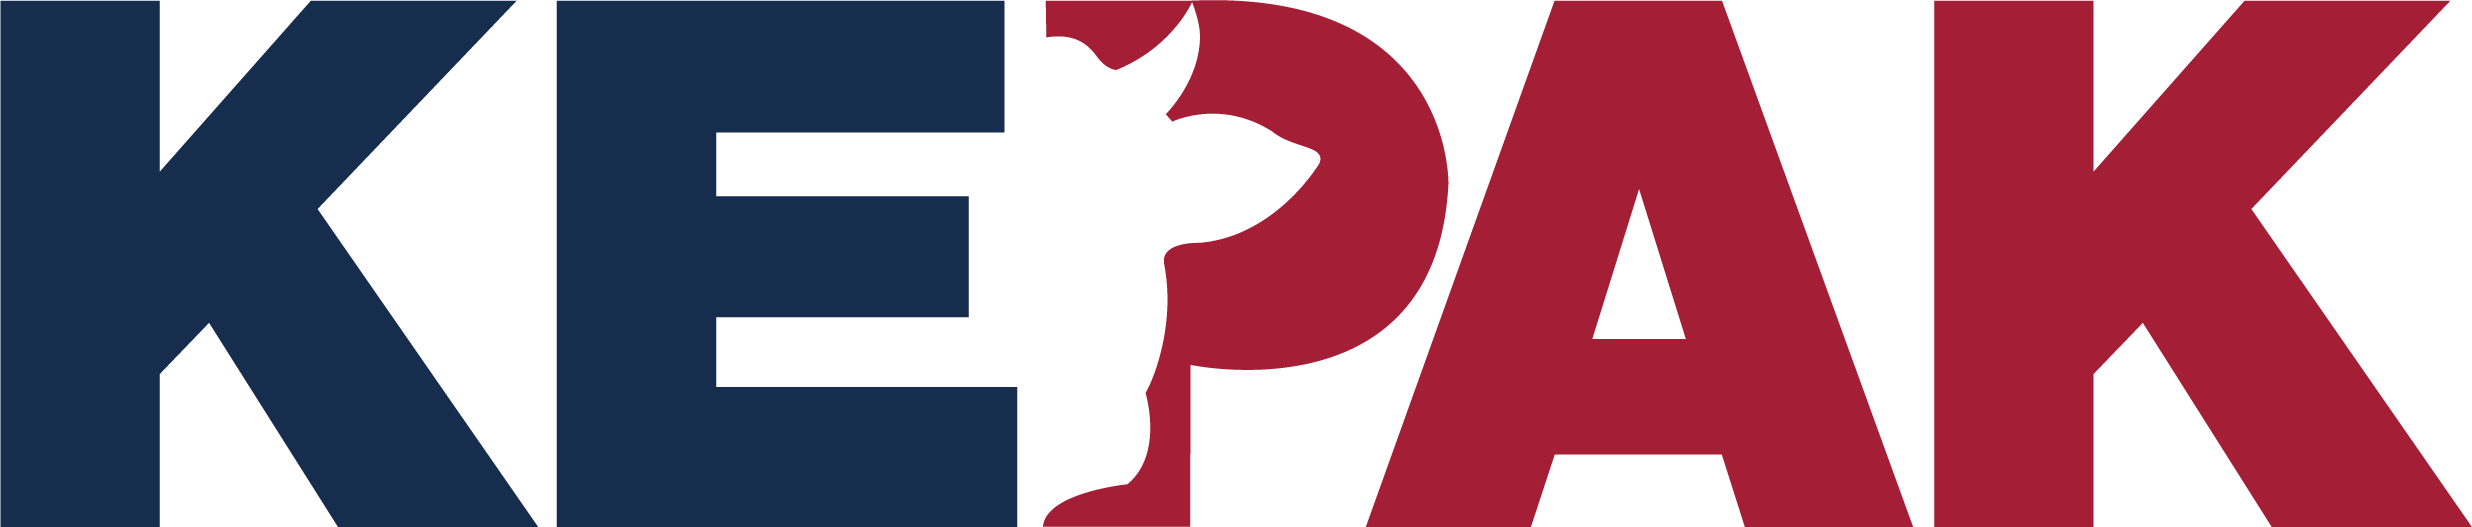 Kepak Group logotype